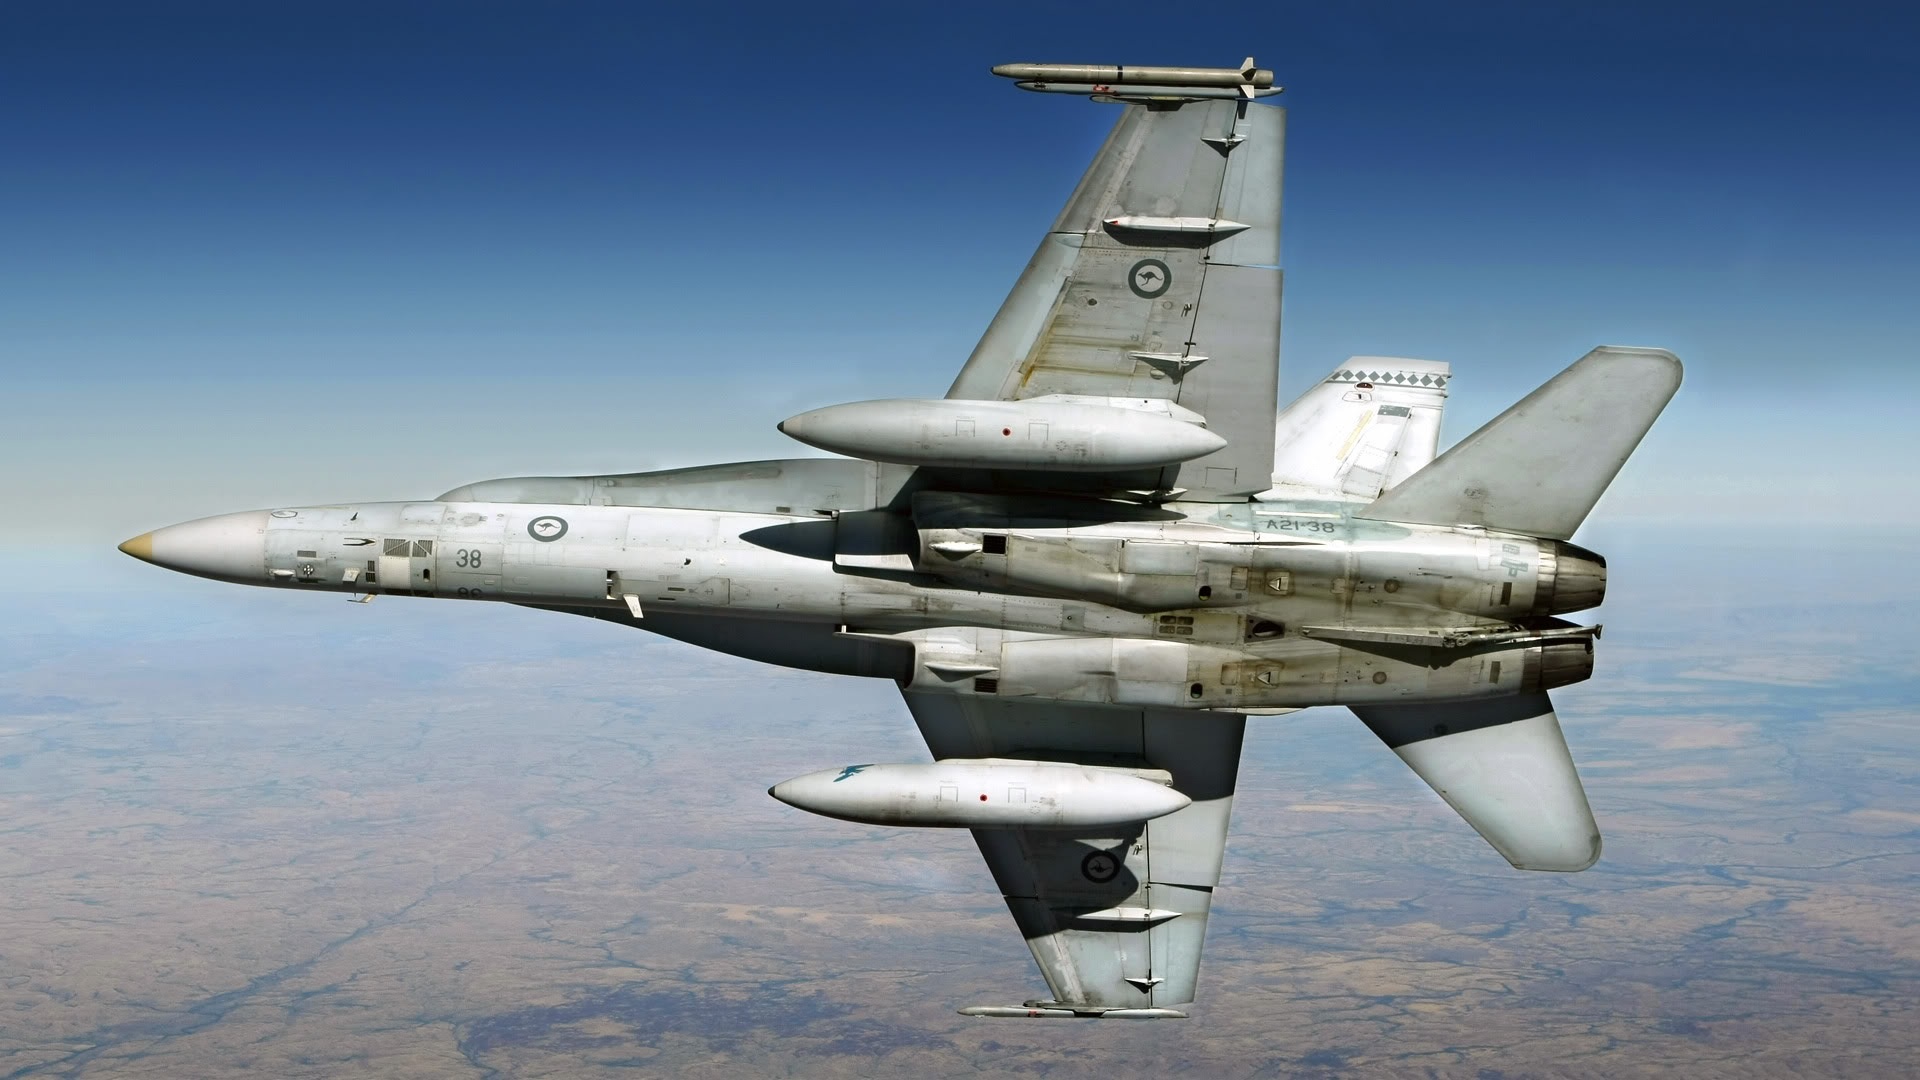 Australian Air Power F18 Hornet Wallpaper